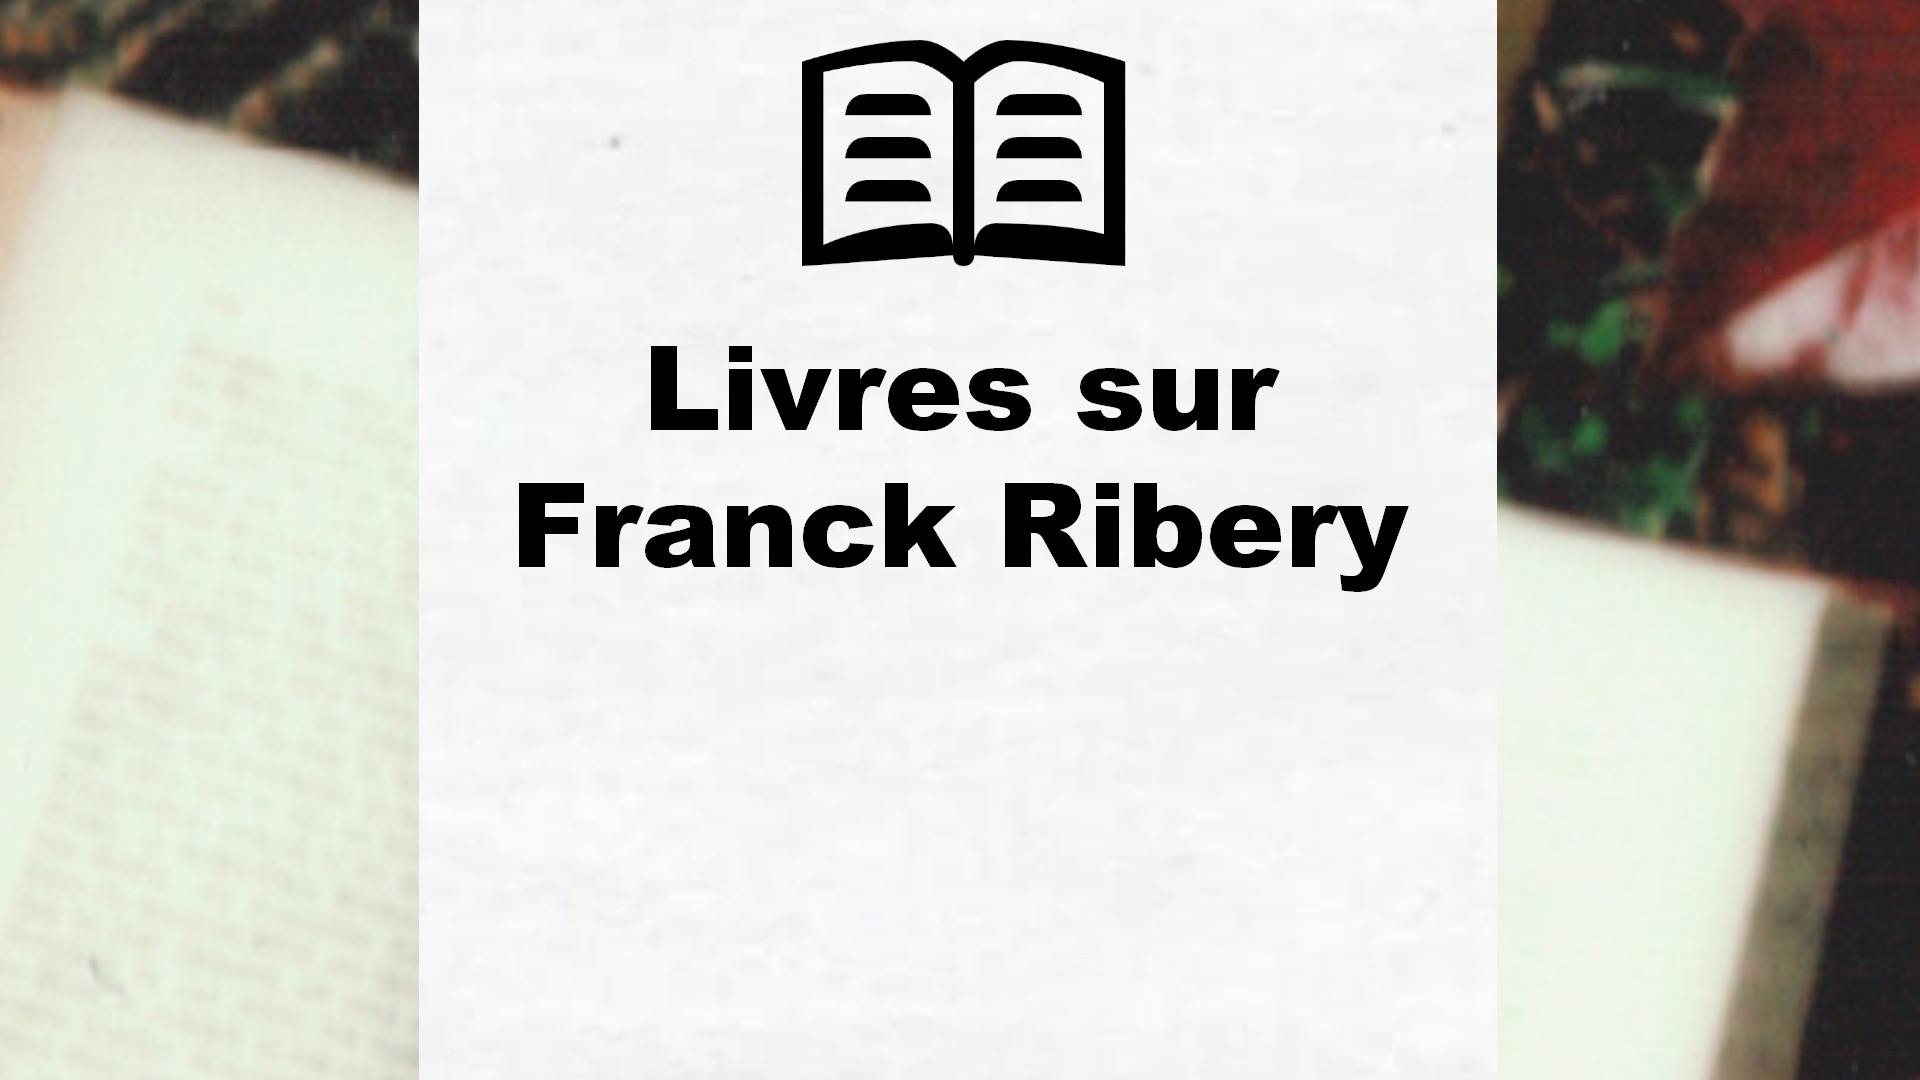 Livres sur Franck Ribery